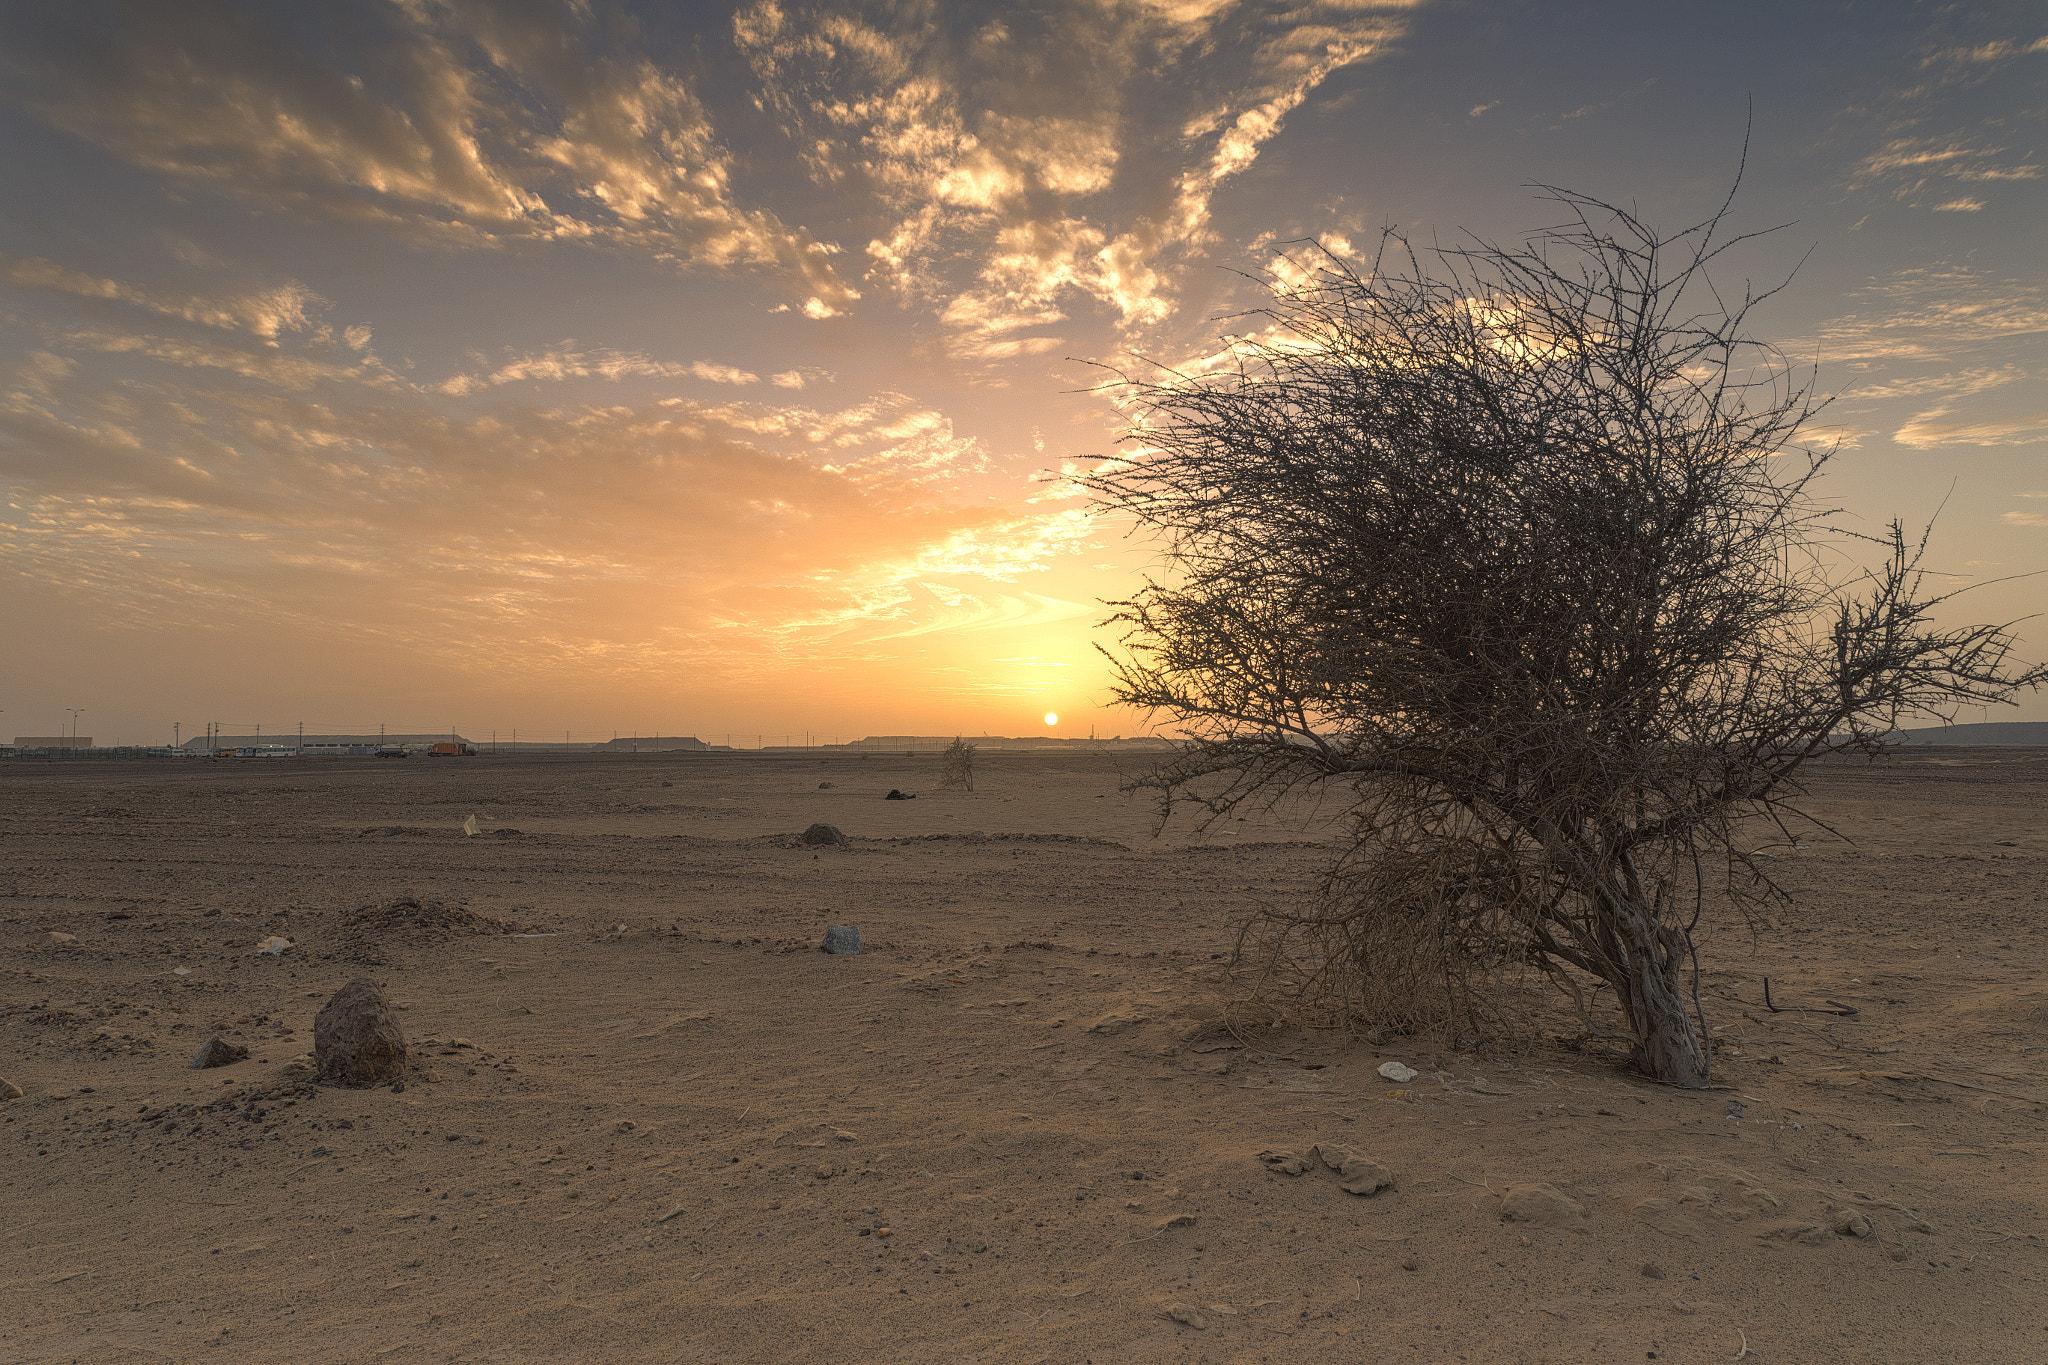 Canon EOS 6D sample photo. Sahara evening photography